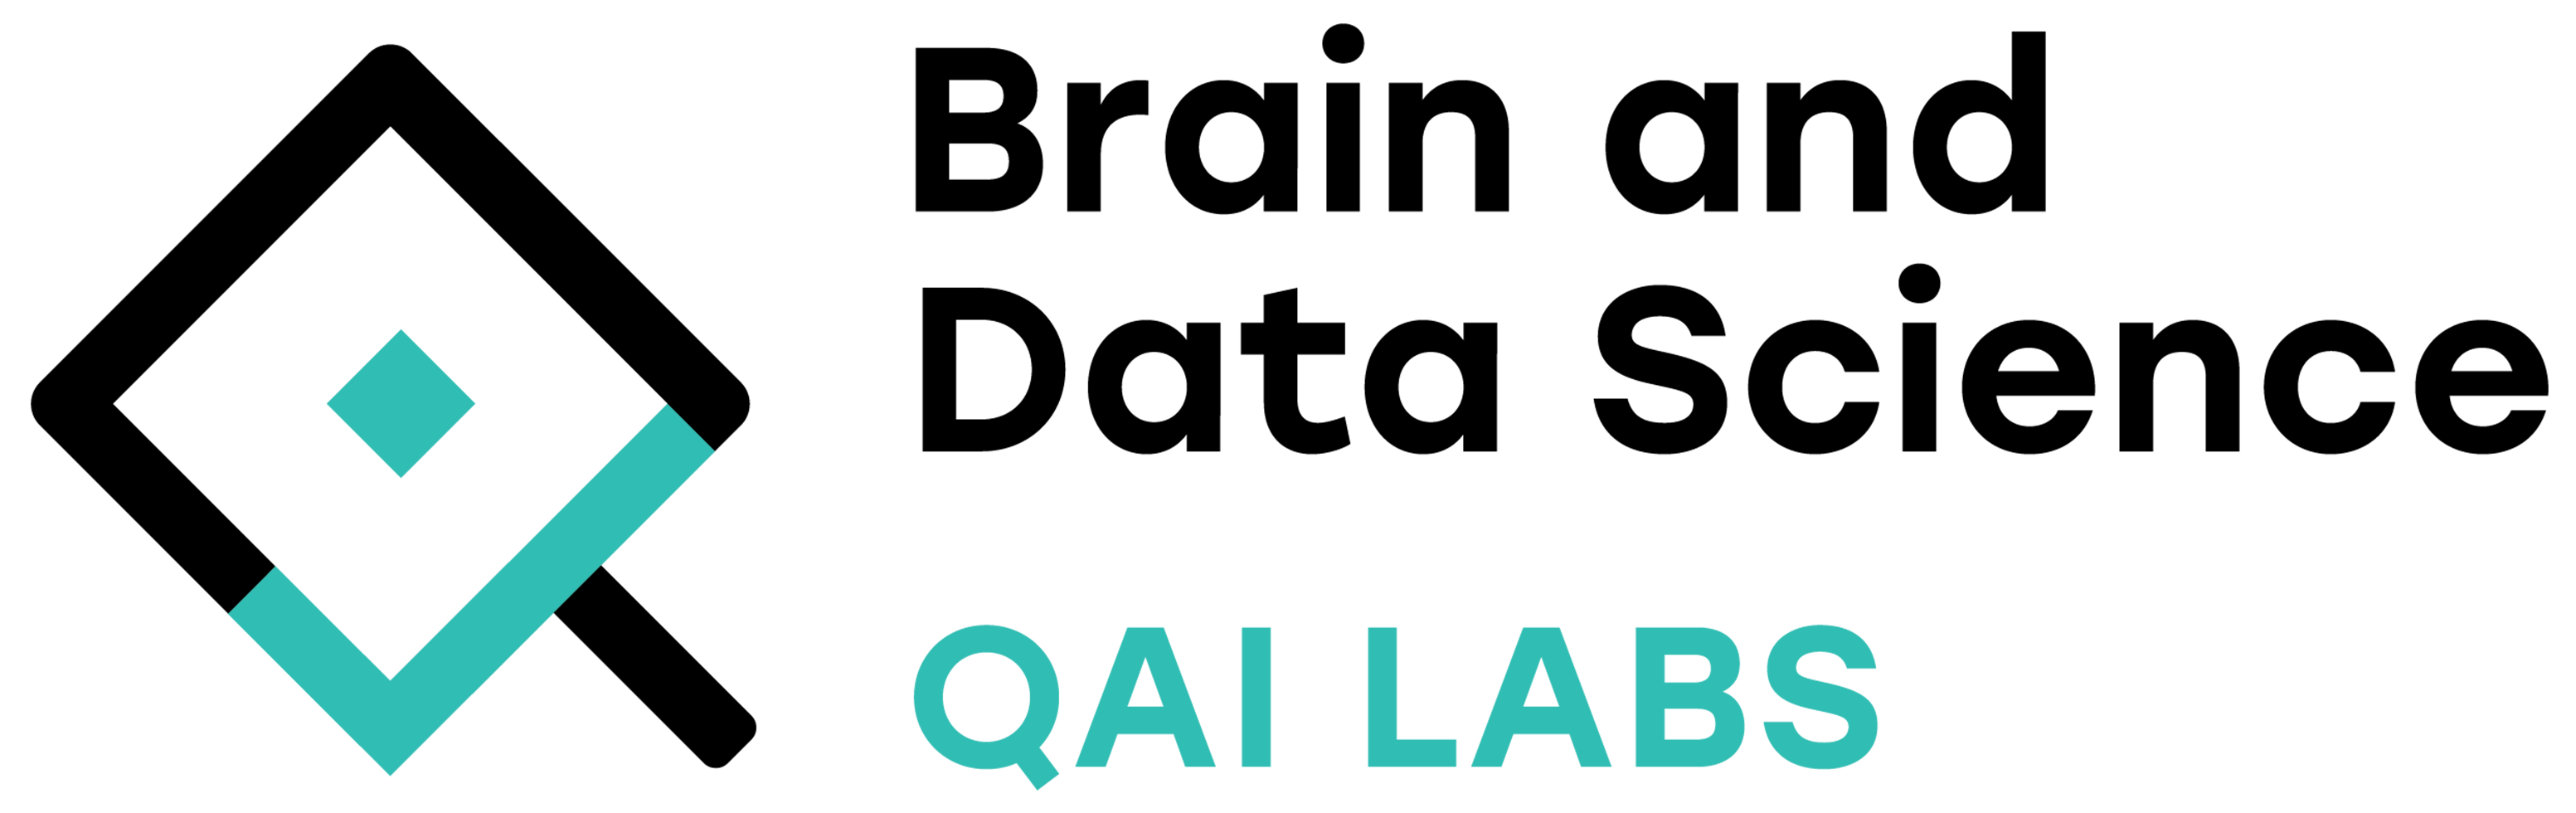 QAI Labs logo